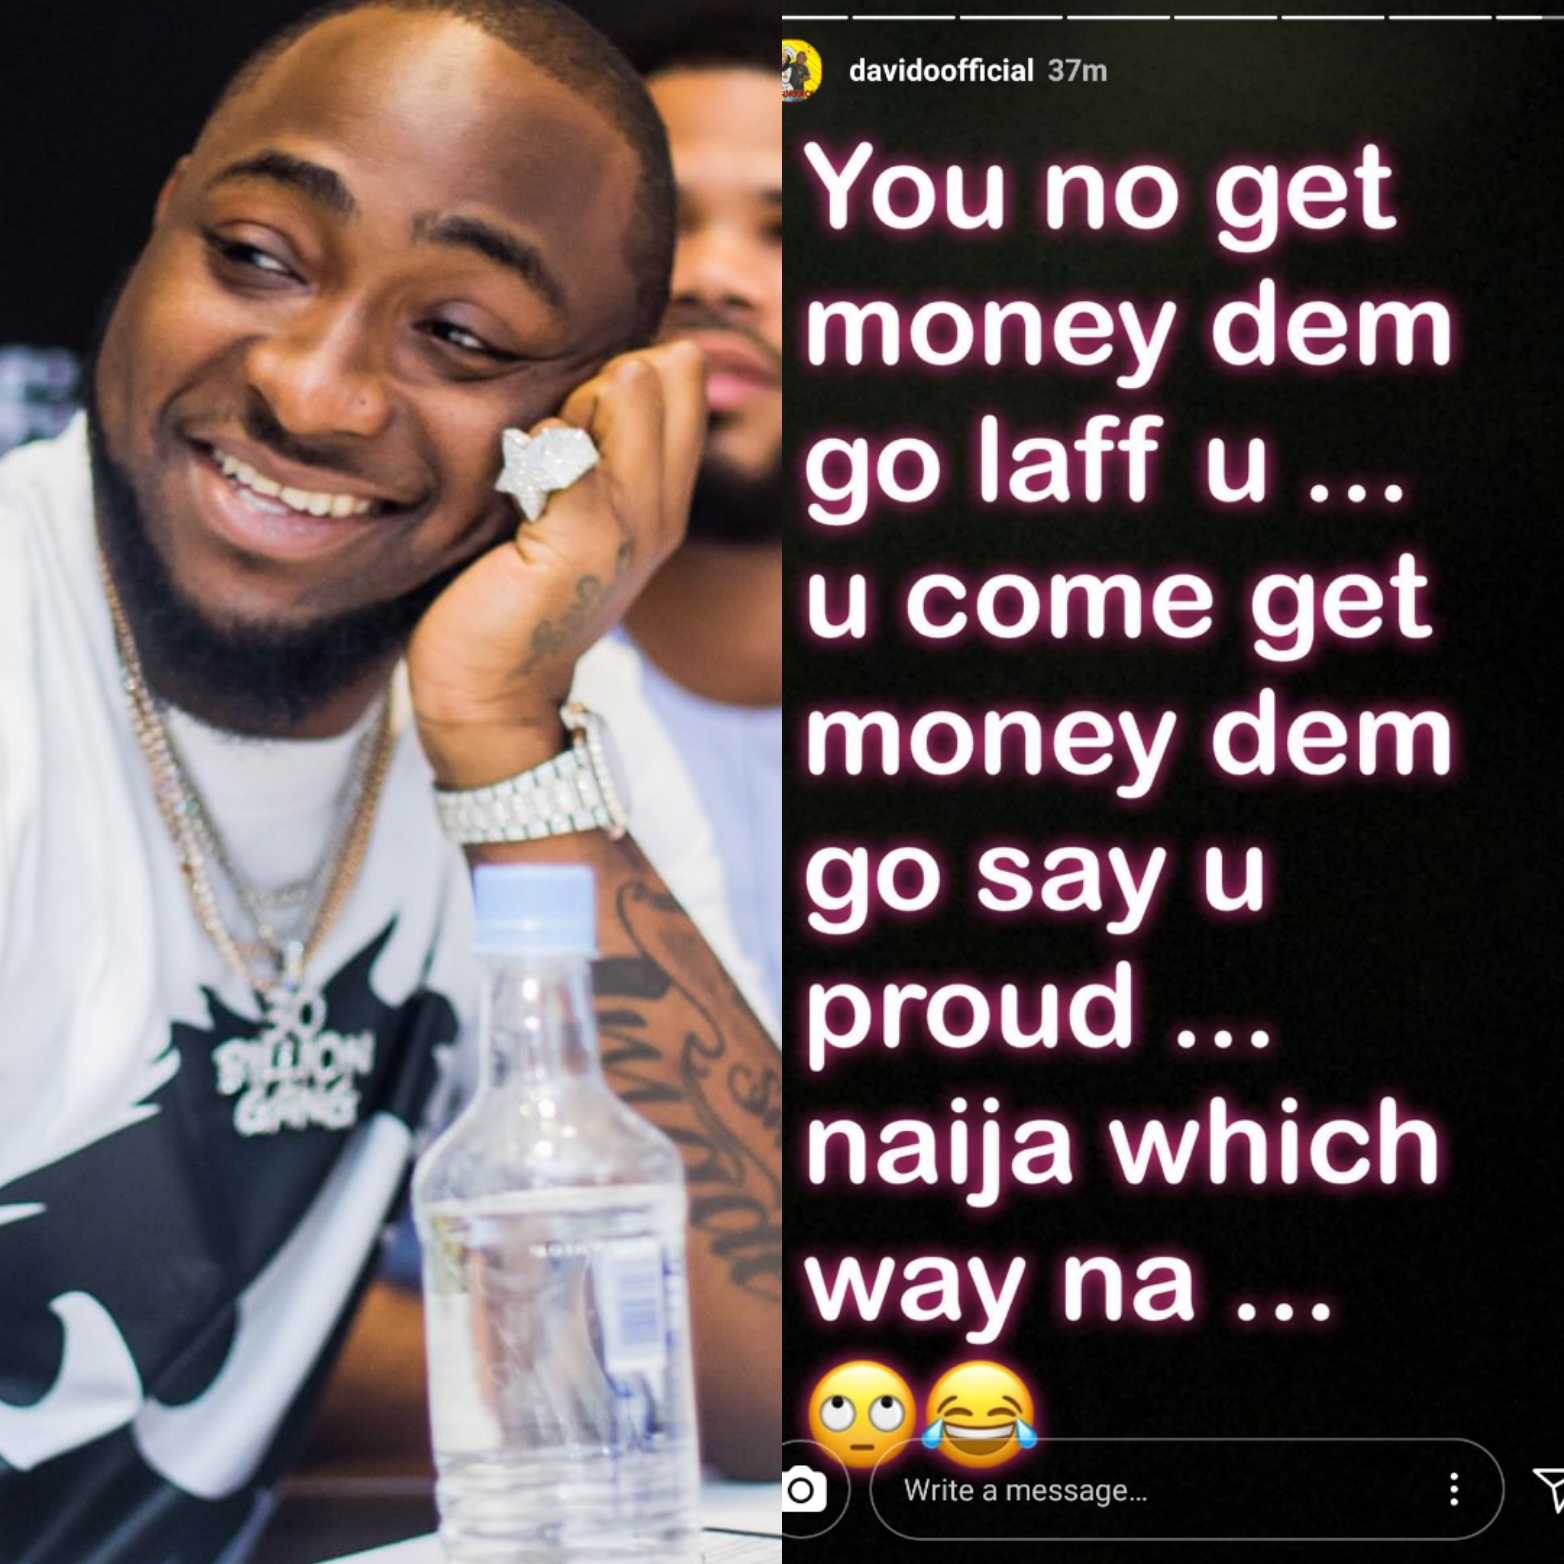 'You no get money Dem go laff u' - Davido shares his dilemma to Nigerians